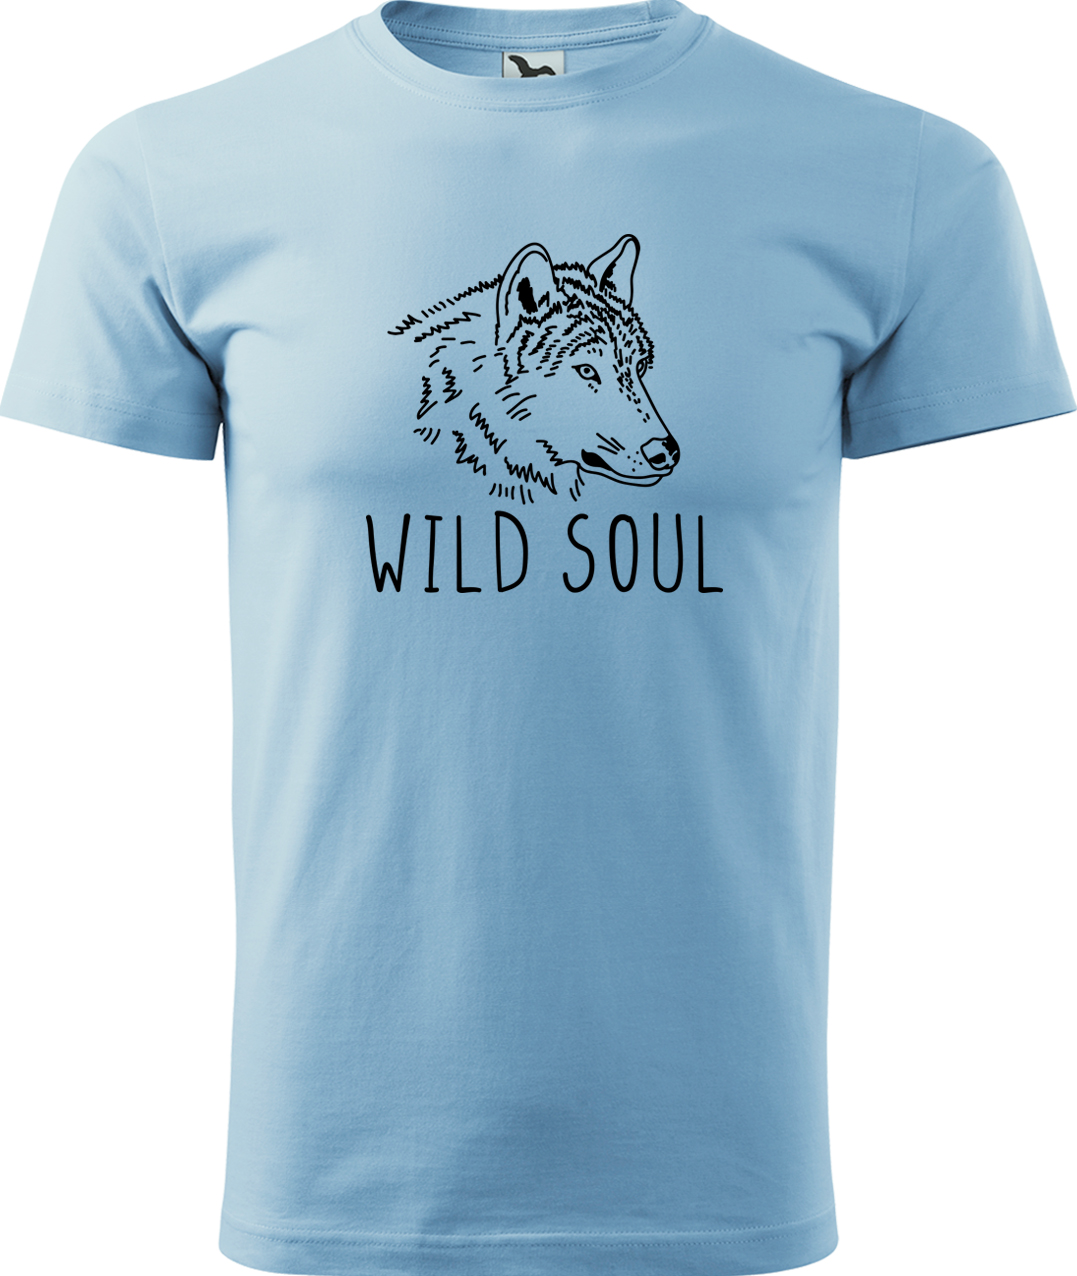 Pánské tričko s vlkem - Wild soul Velikost: 4XL, Barva: Nebesky modrá (15), Střih: pánský